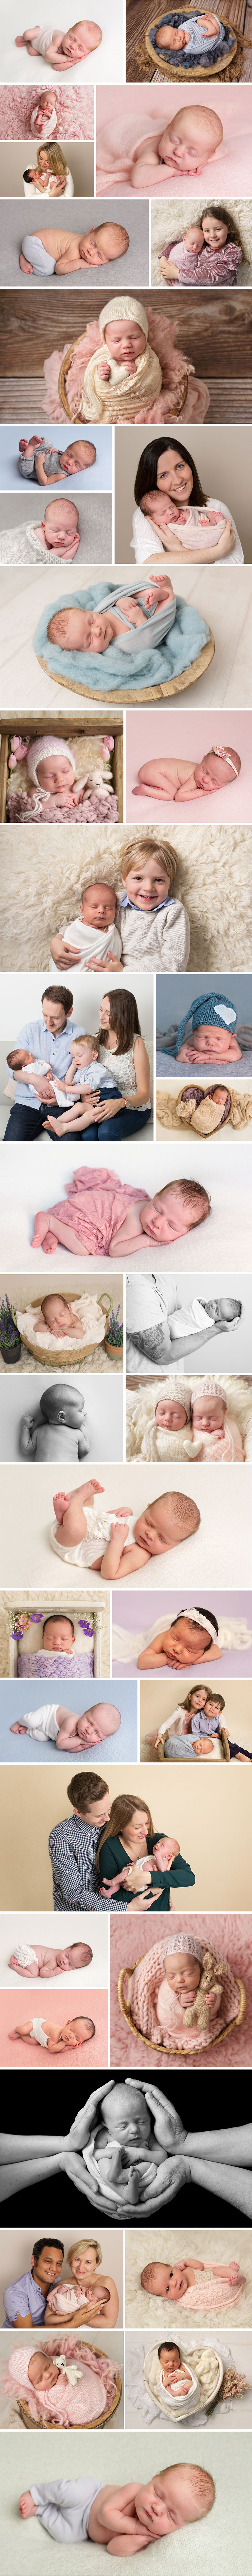 Annie Gower-Jones Photography newborn baby photoshoot gallery Manchester Altrincham Timperley